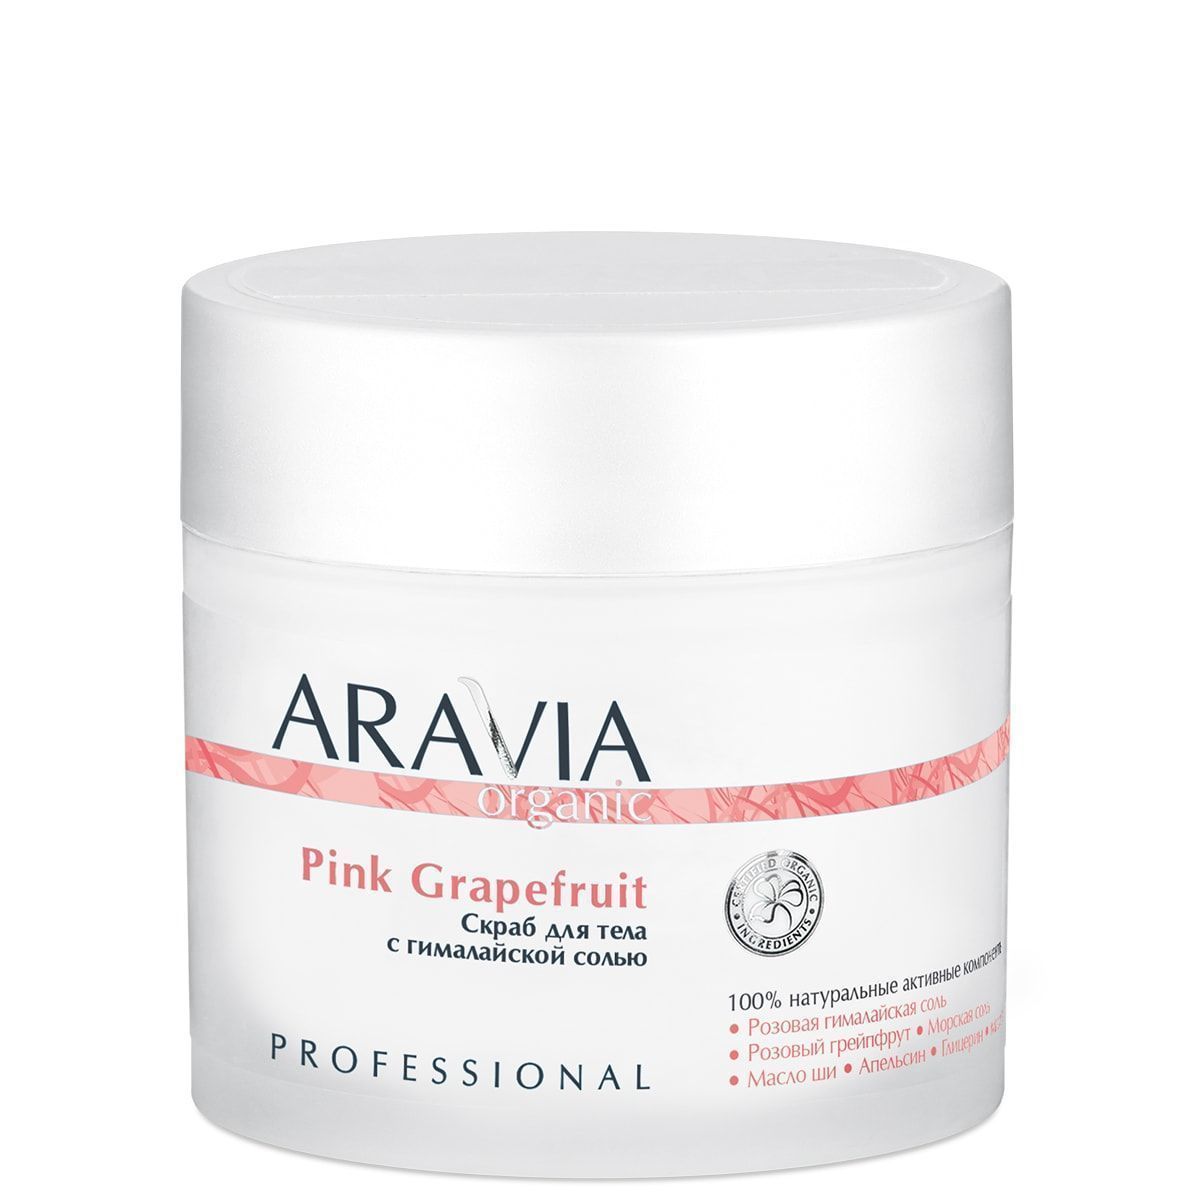 Aravia Organic Скраб для тела с гималайской солью Pink Grapefruit, 300мл